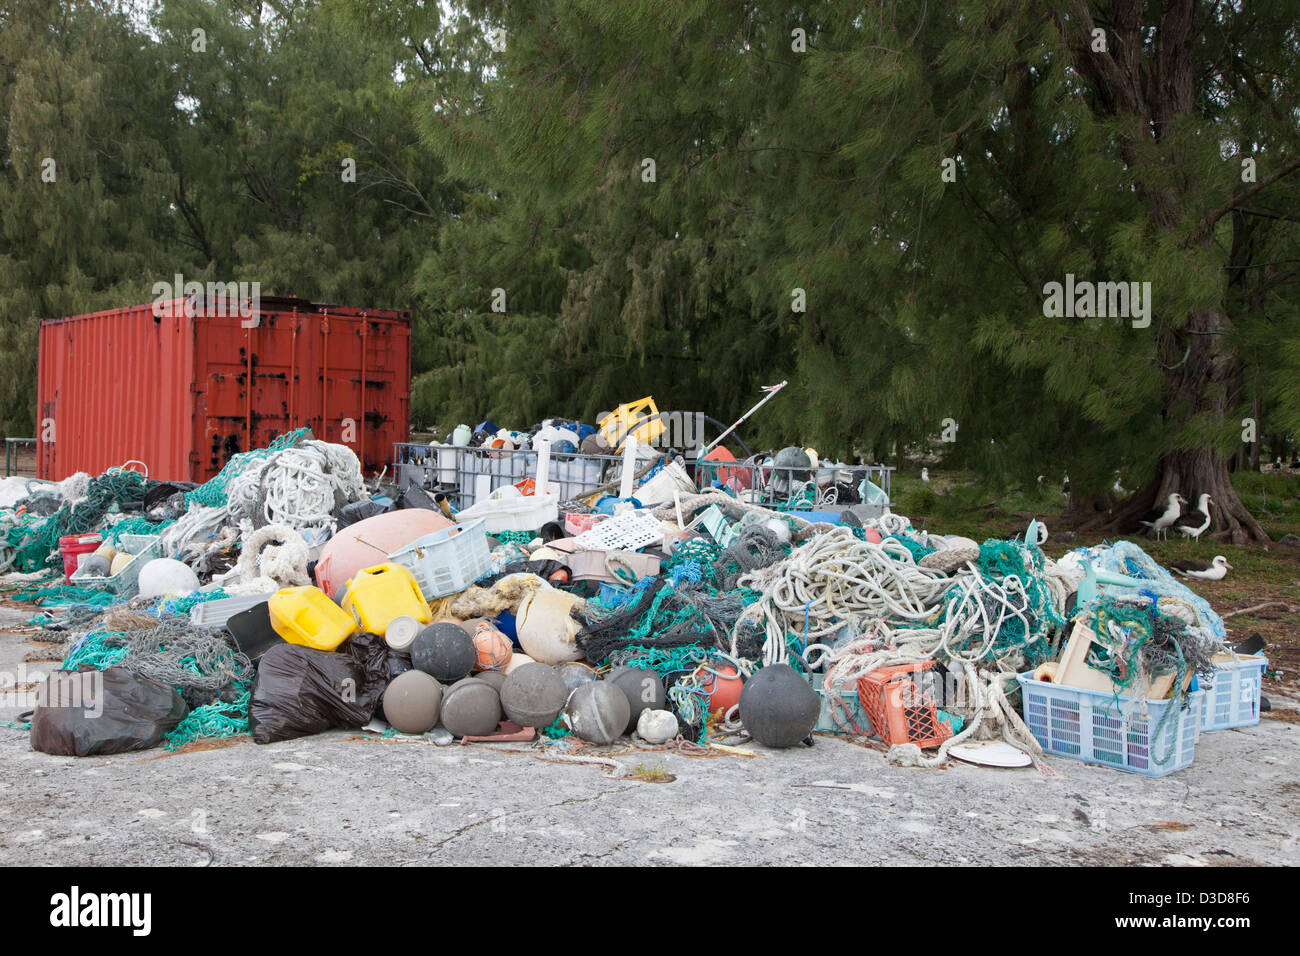 Les débris marins portés à l'atoll de Midway par les courants puis recueillies pour être expédiés hors des îles pour le recyclage ou l'élimination Banque D'Images